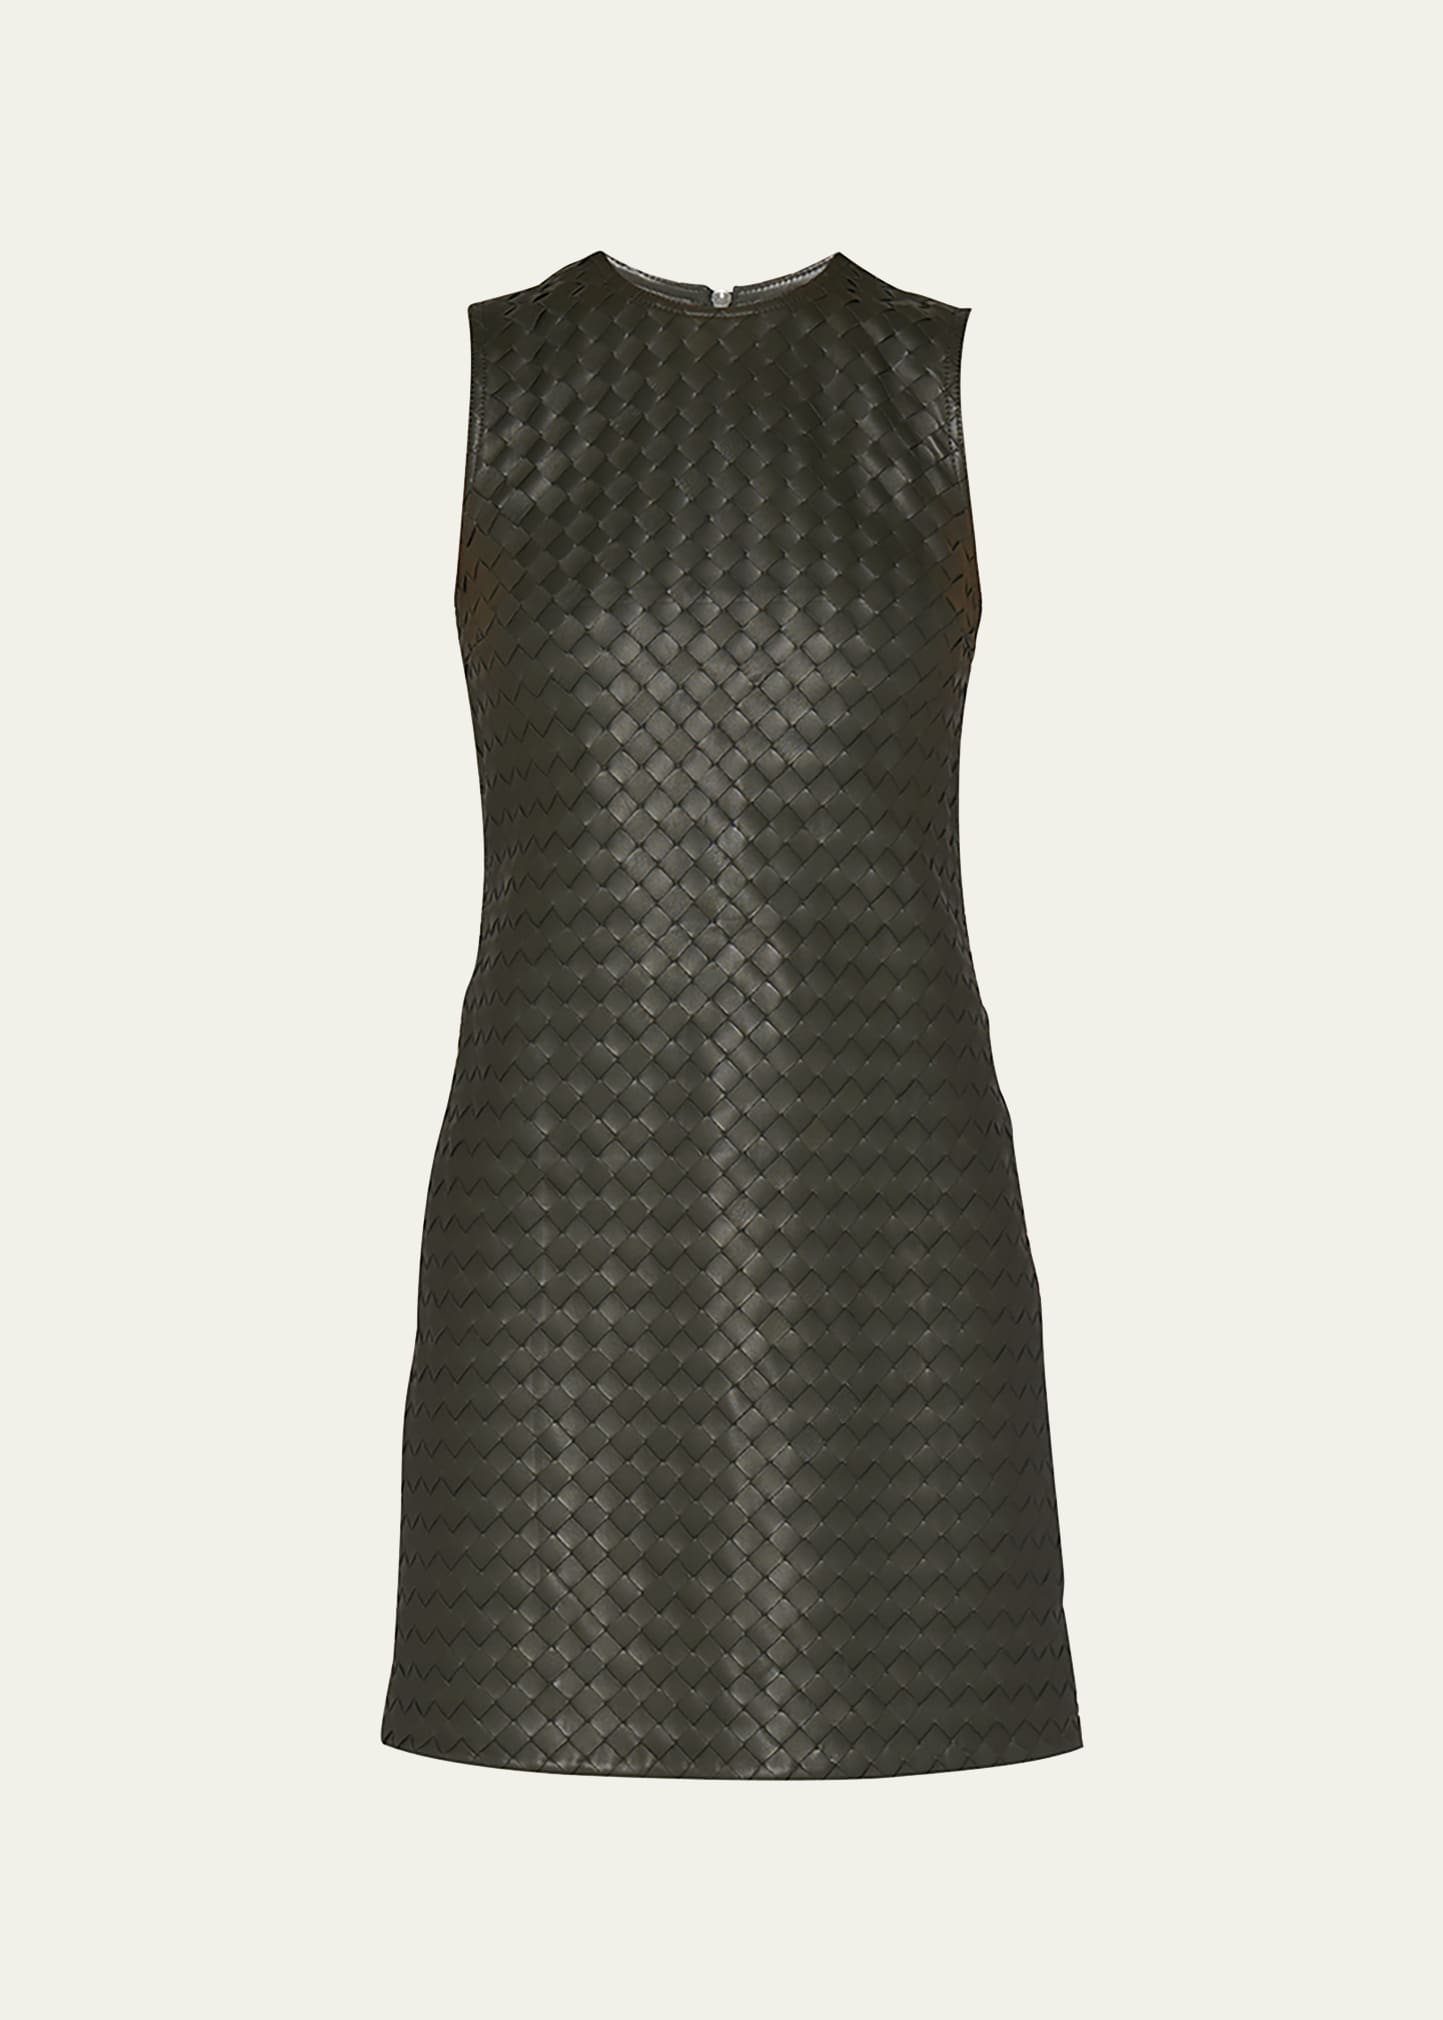 Leather Intrecciato Weave Mini Dress